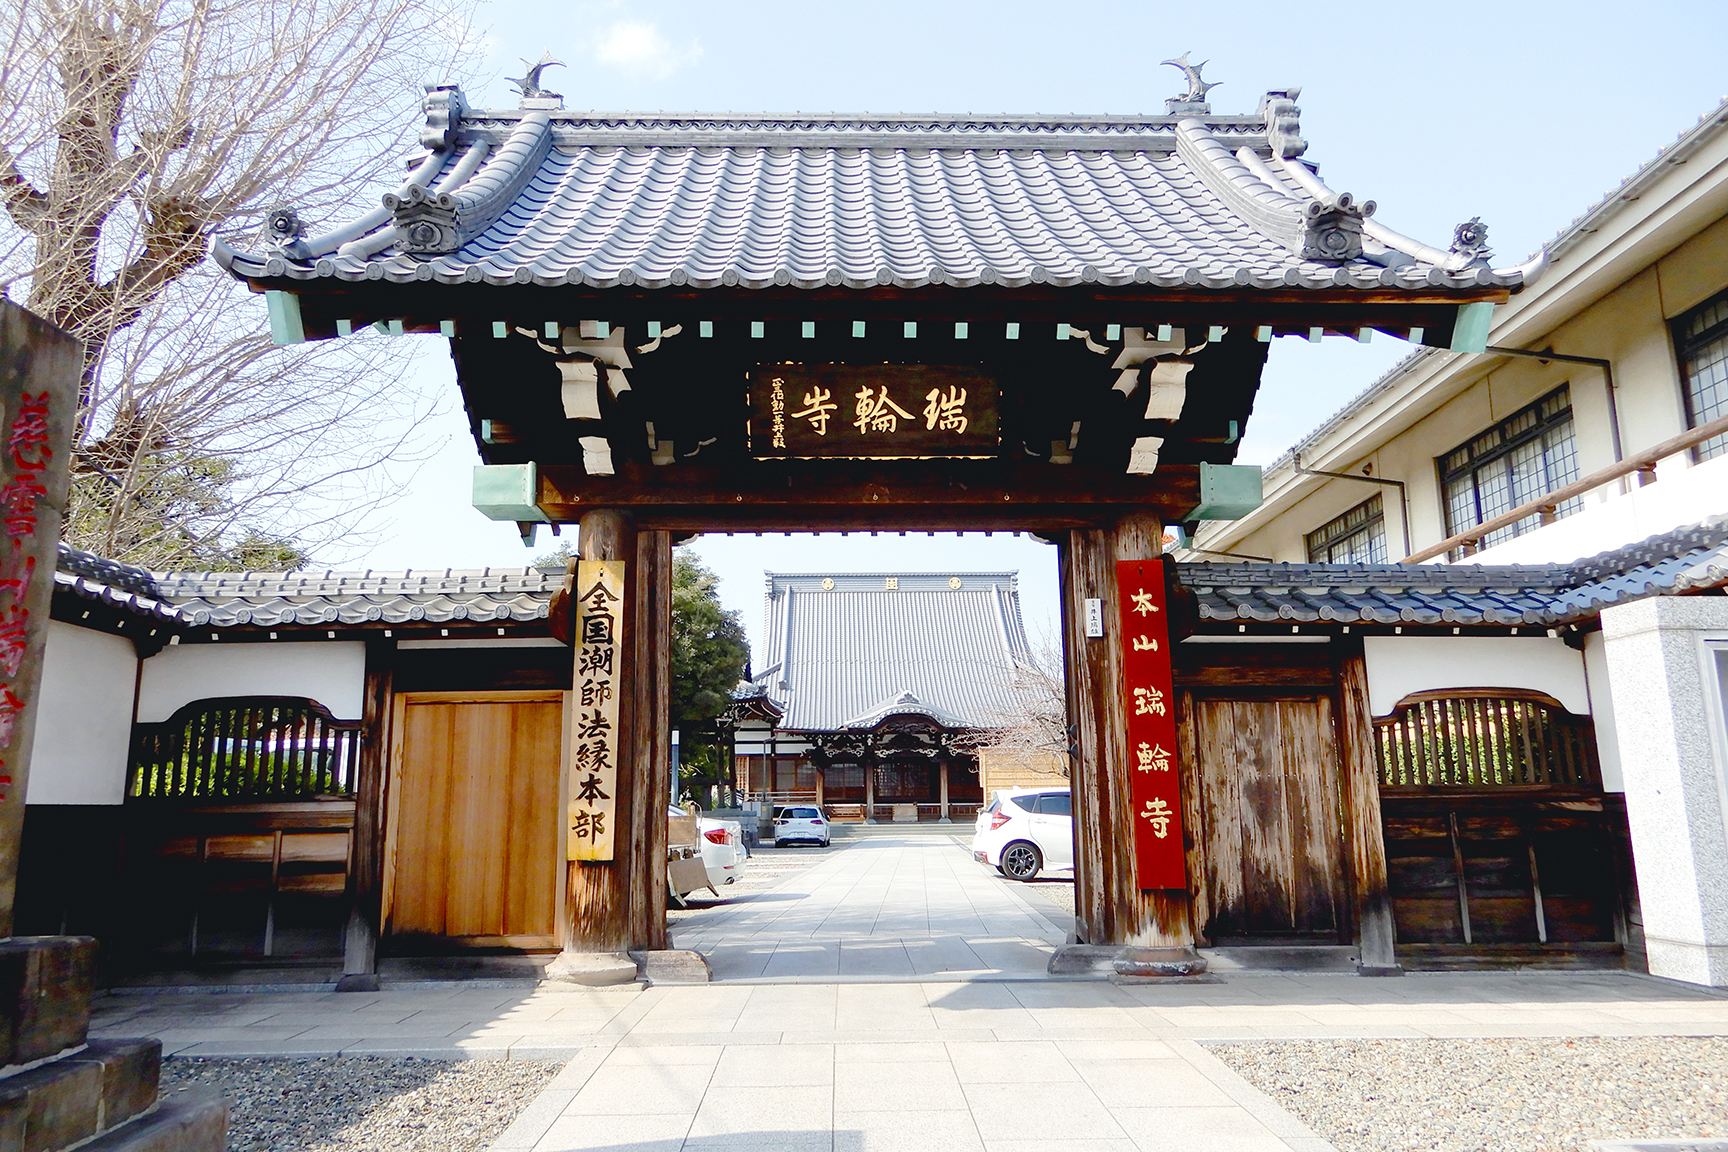 徳川家康公由緒の格式と伝統ある名刹「本山谷中 瑞輪寺」